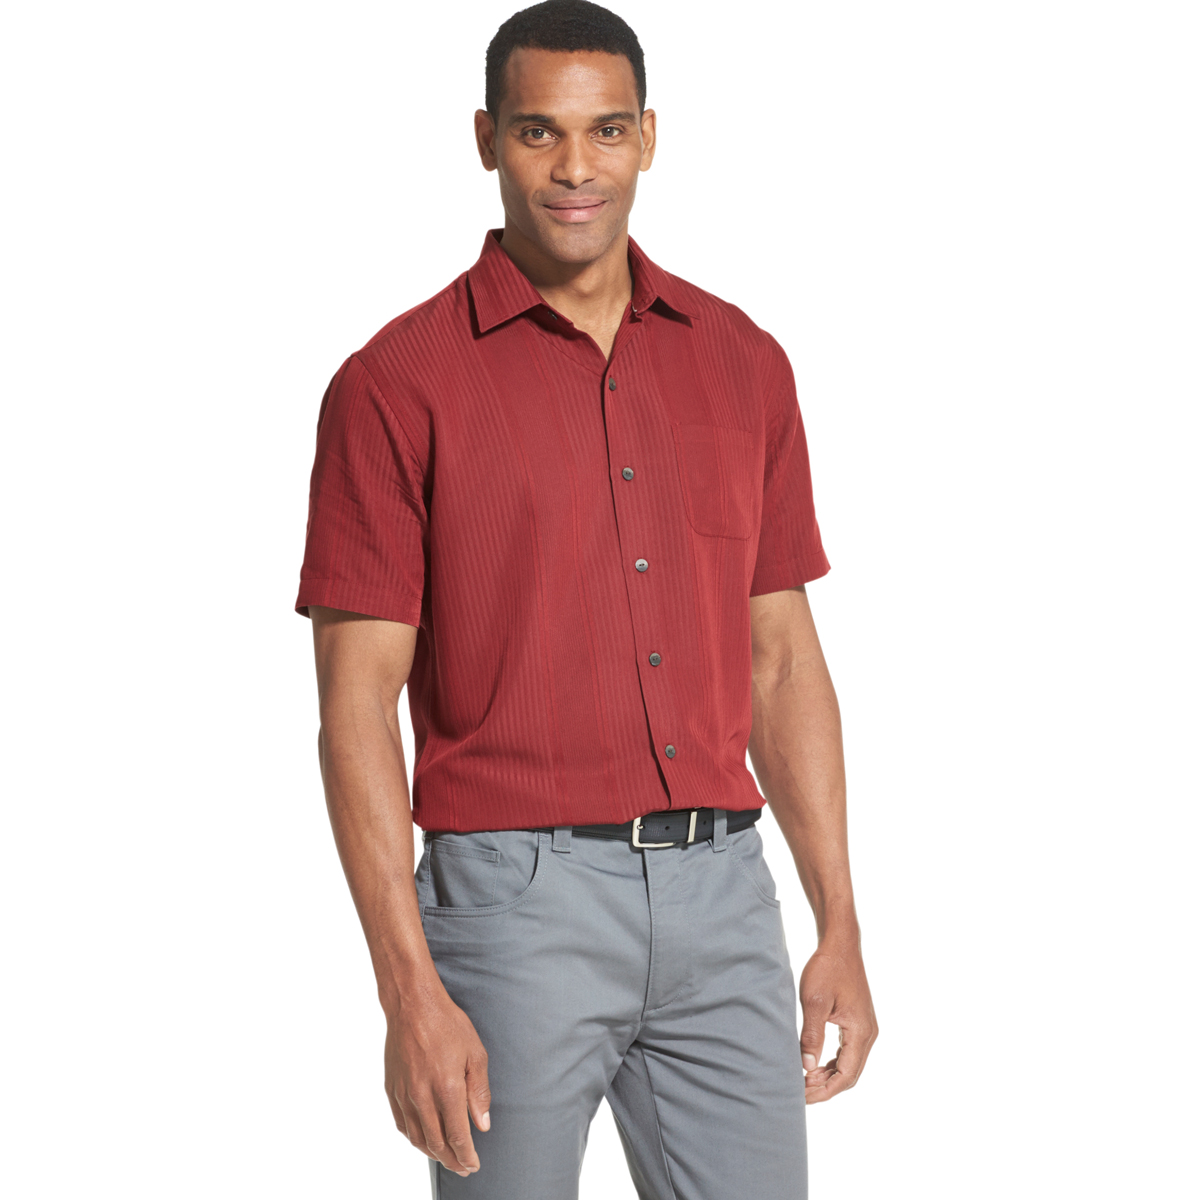 Van Heusen Men's Air Non-Iron Short-Sleeve Shirt - Red, XXL